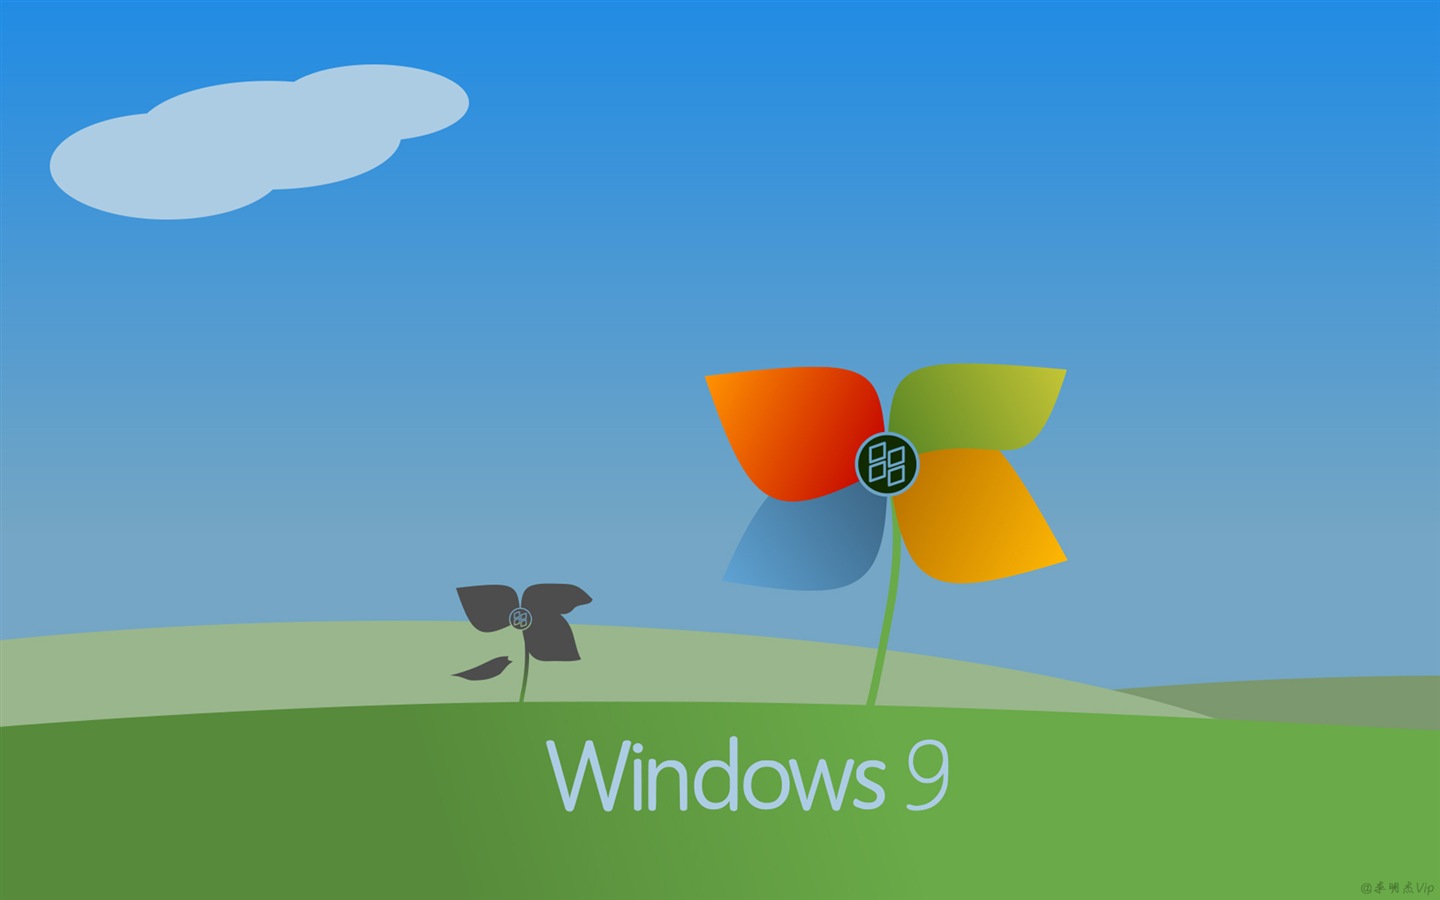 微软windows 9 系统主题 高清壁纸5 1440x900